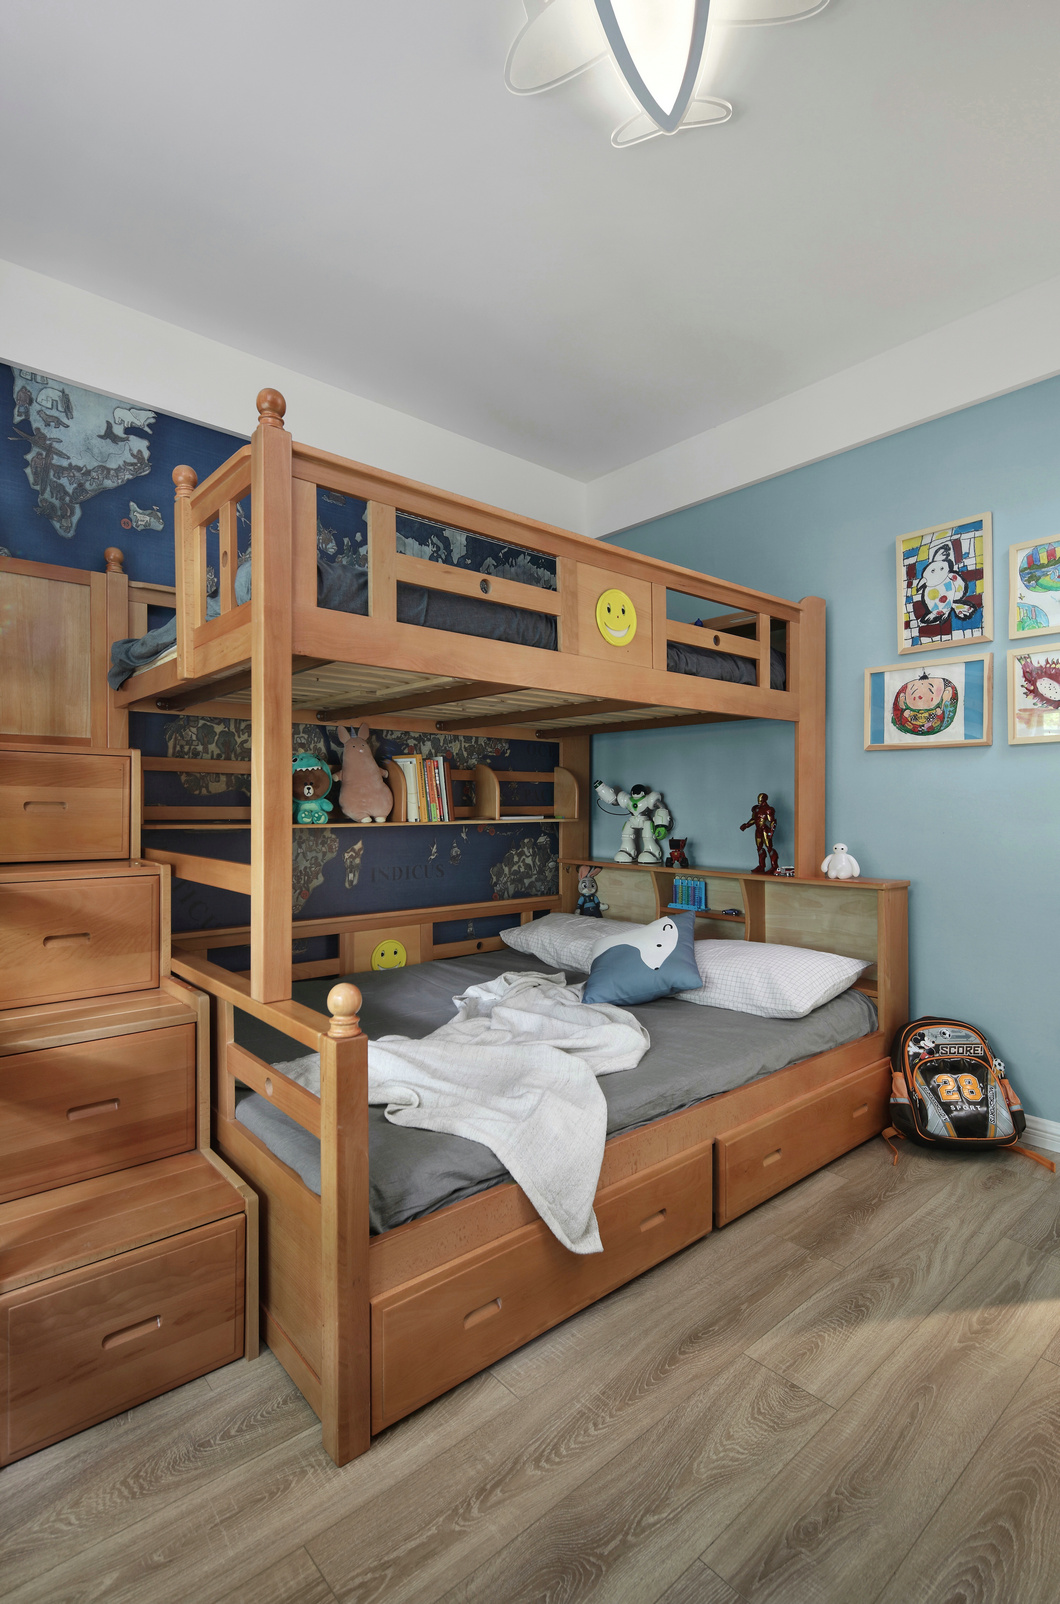 素雅简洁的儿童房采用高低床打造,背景墙采用蓝色装饰,趣味性十足